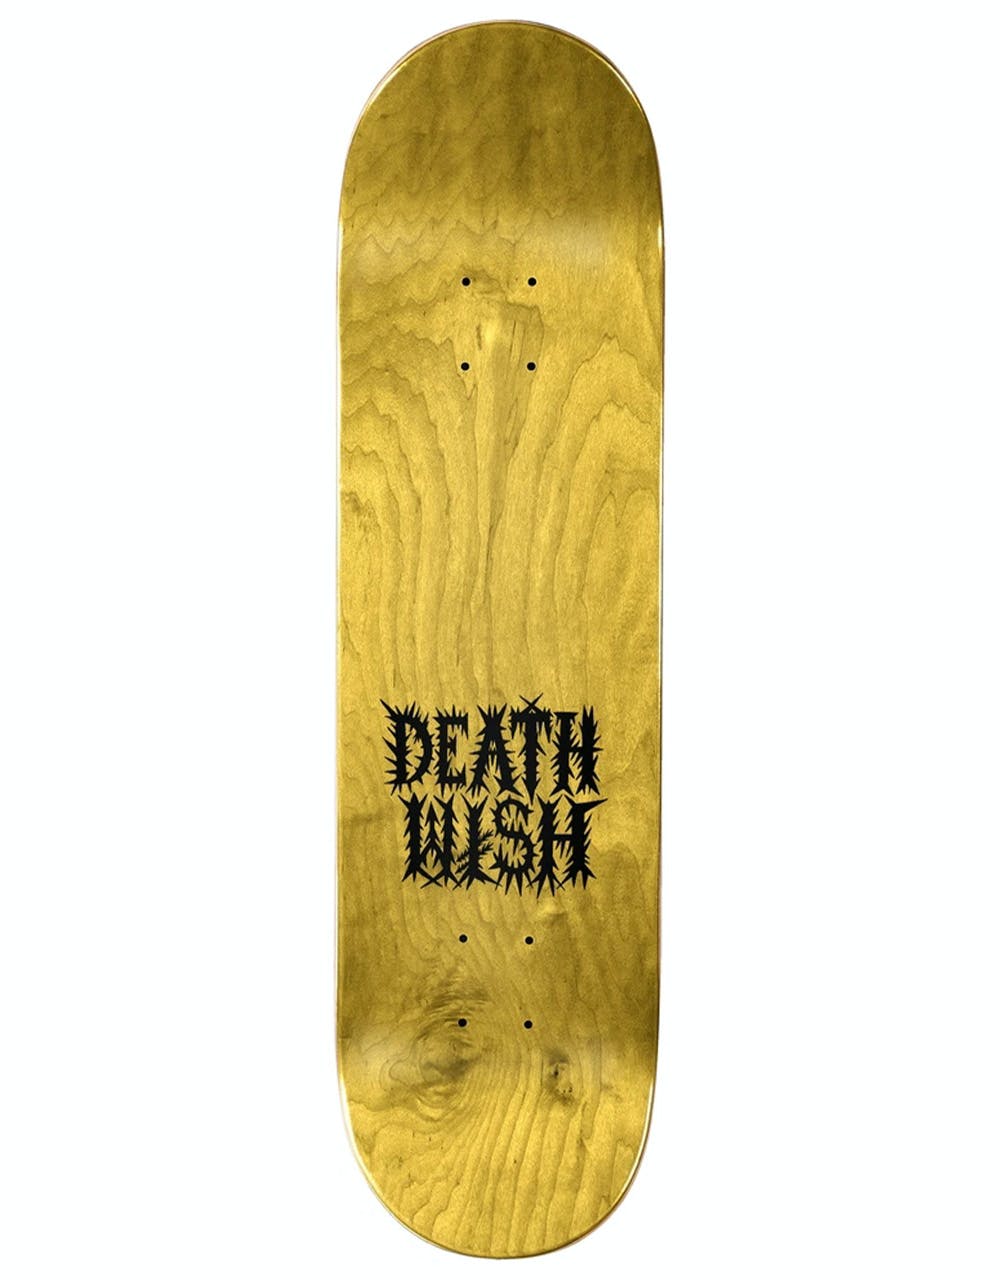 Deathwish Foy Revenge of the Ninja Skateboard Deck - 8.375"